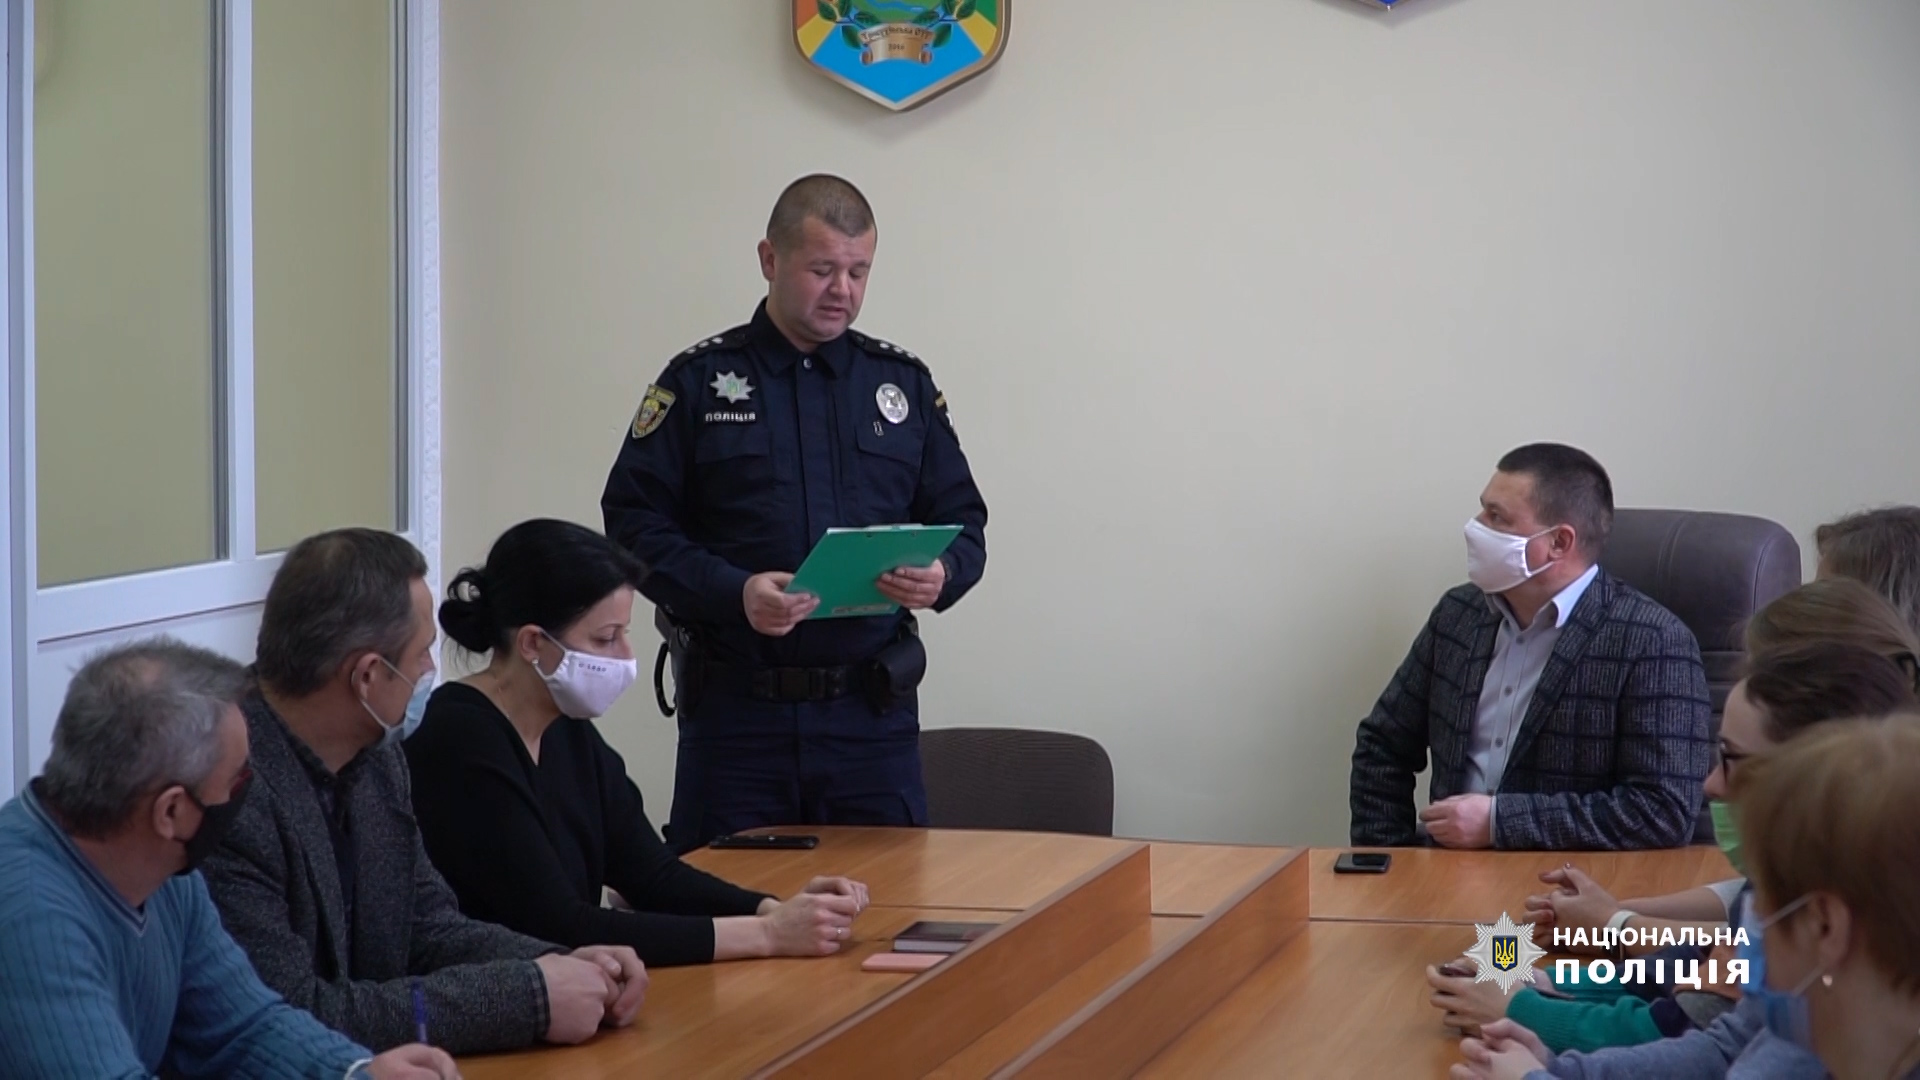 Перший поліцейський офіцер громади на Тернопільщині прозвітував про виконану роботу